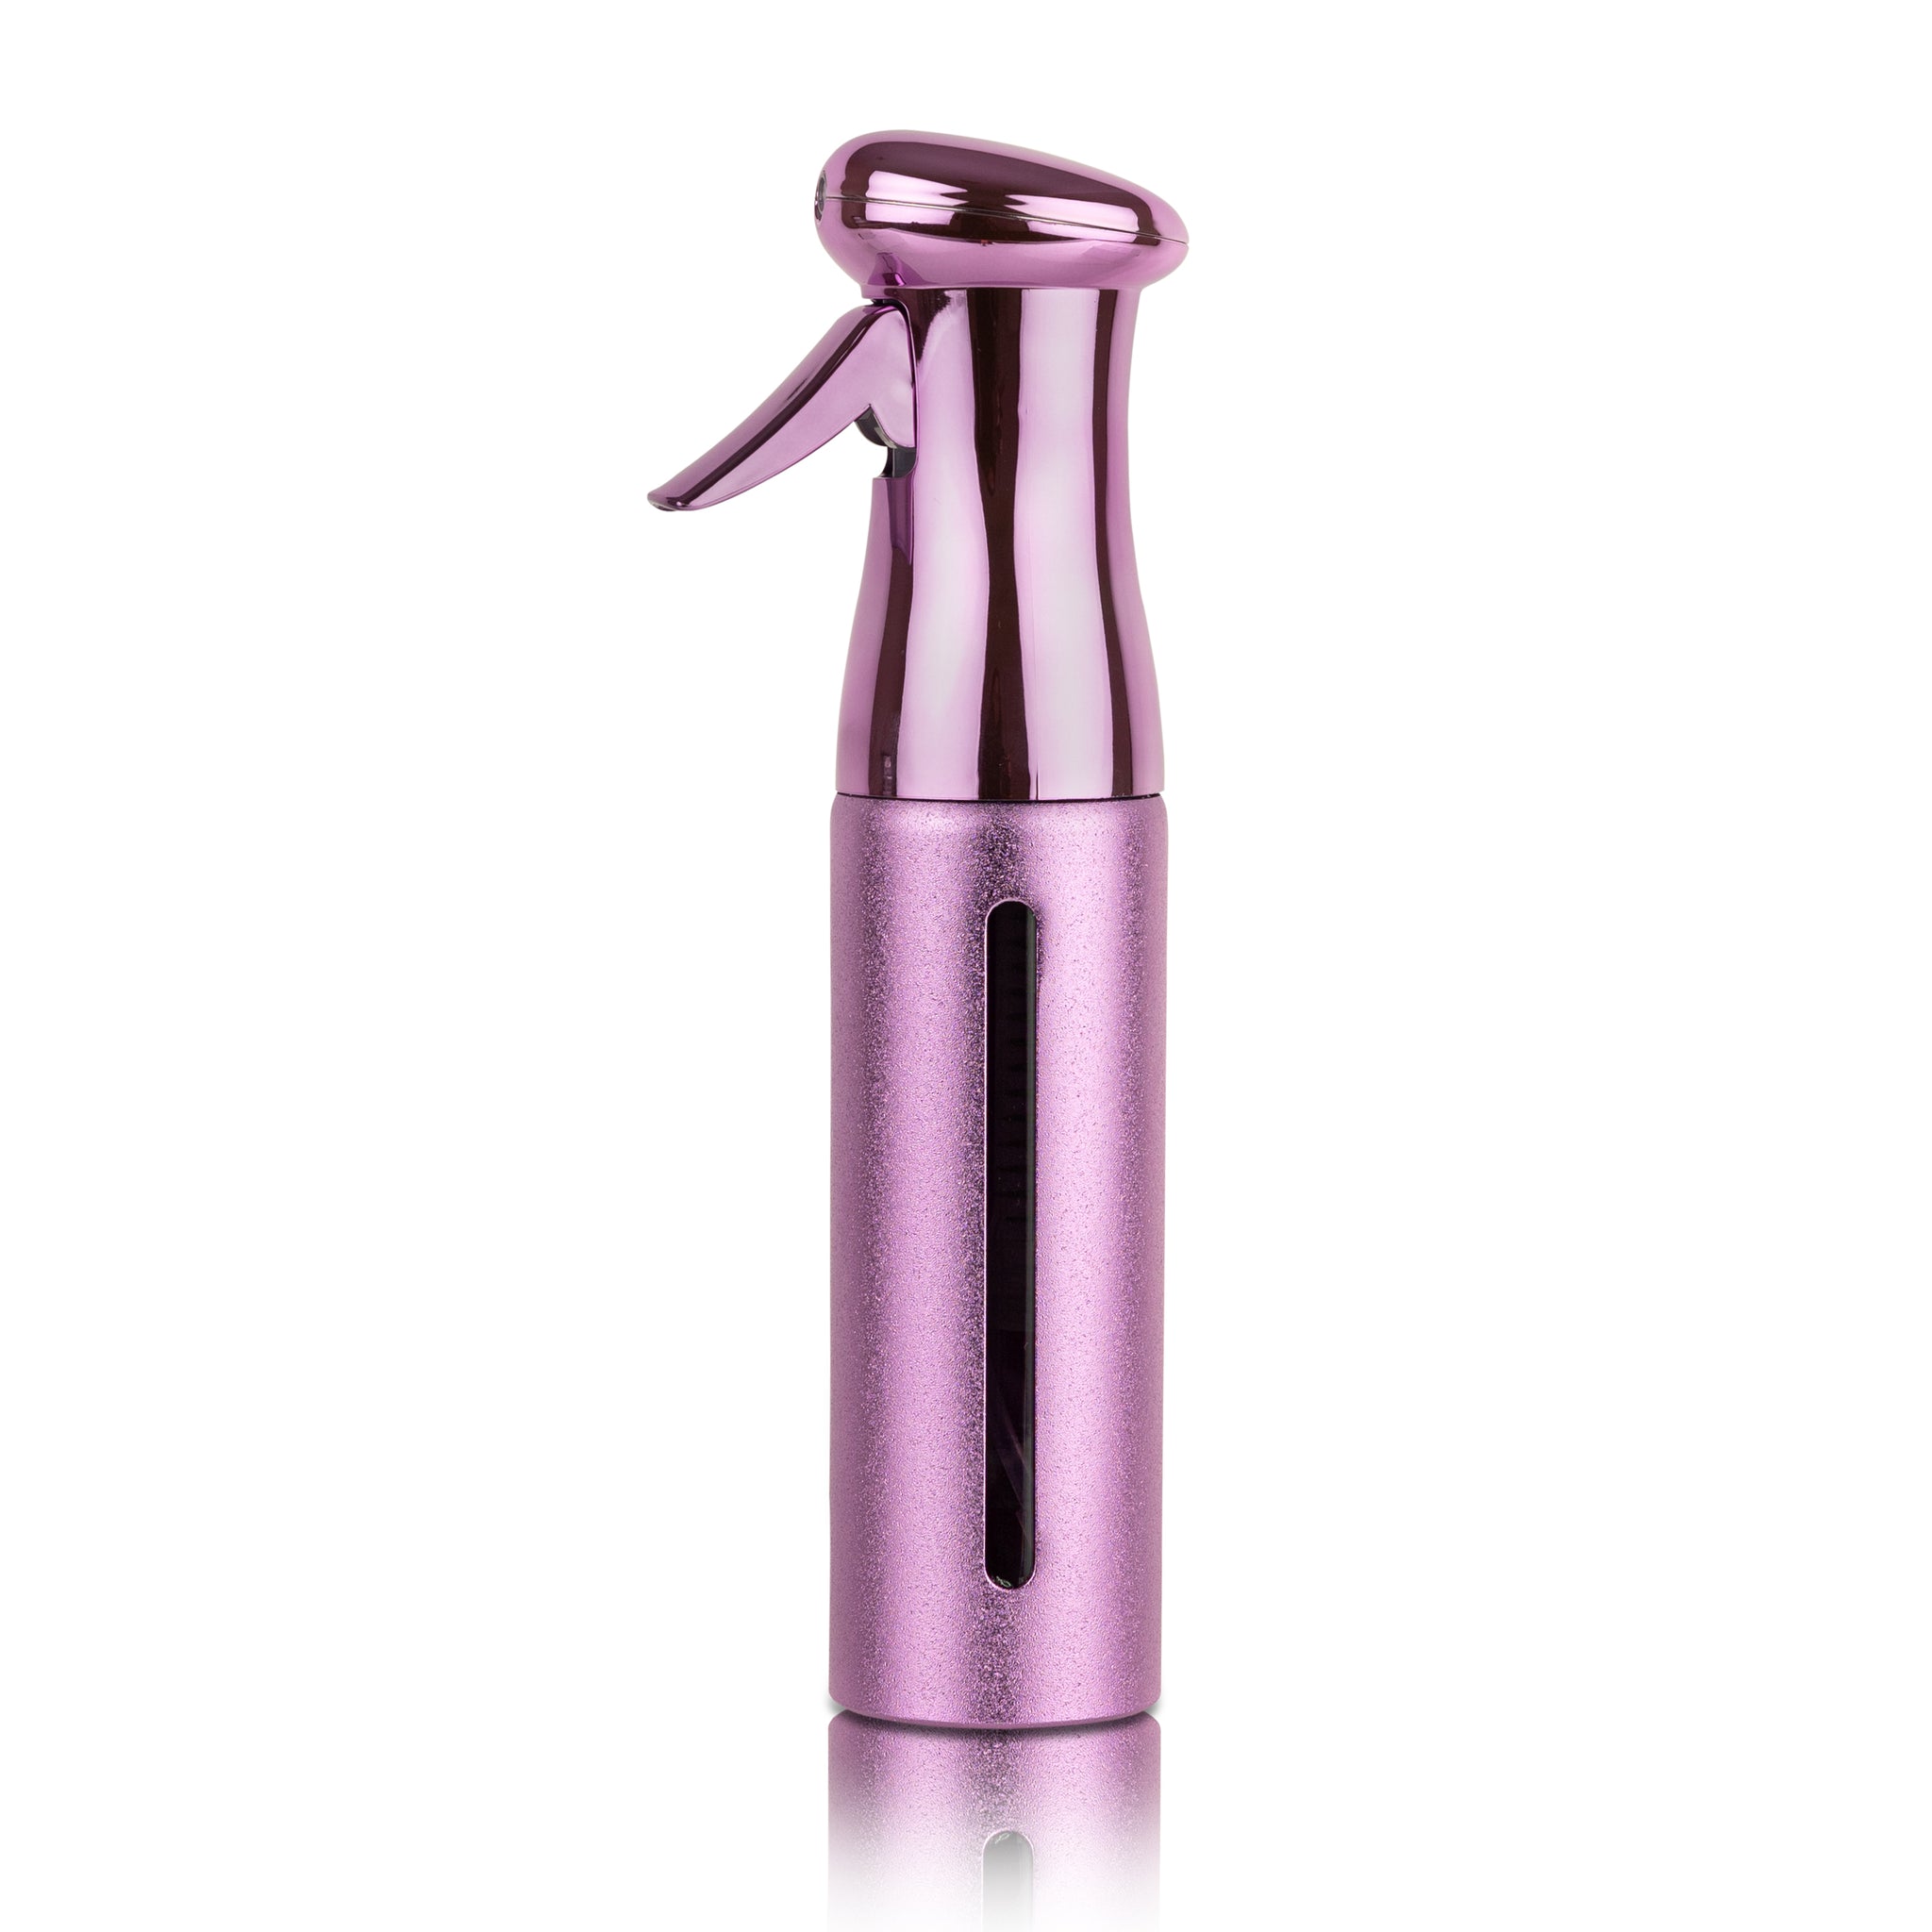 Salon Style Hair Spray Bottle (10oz) –